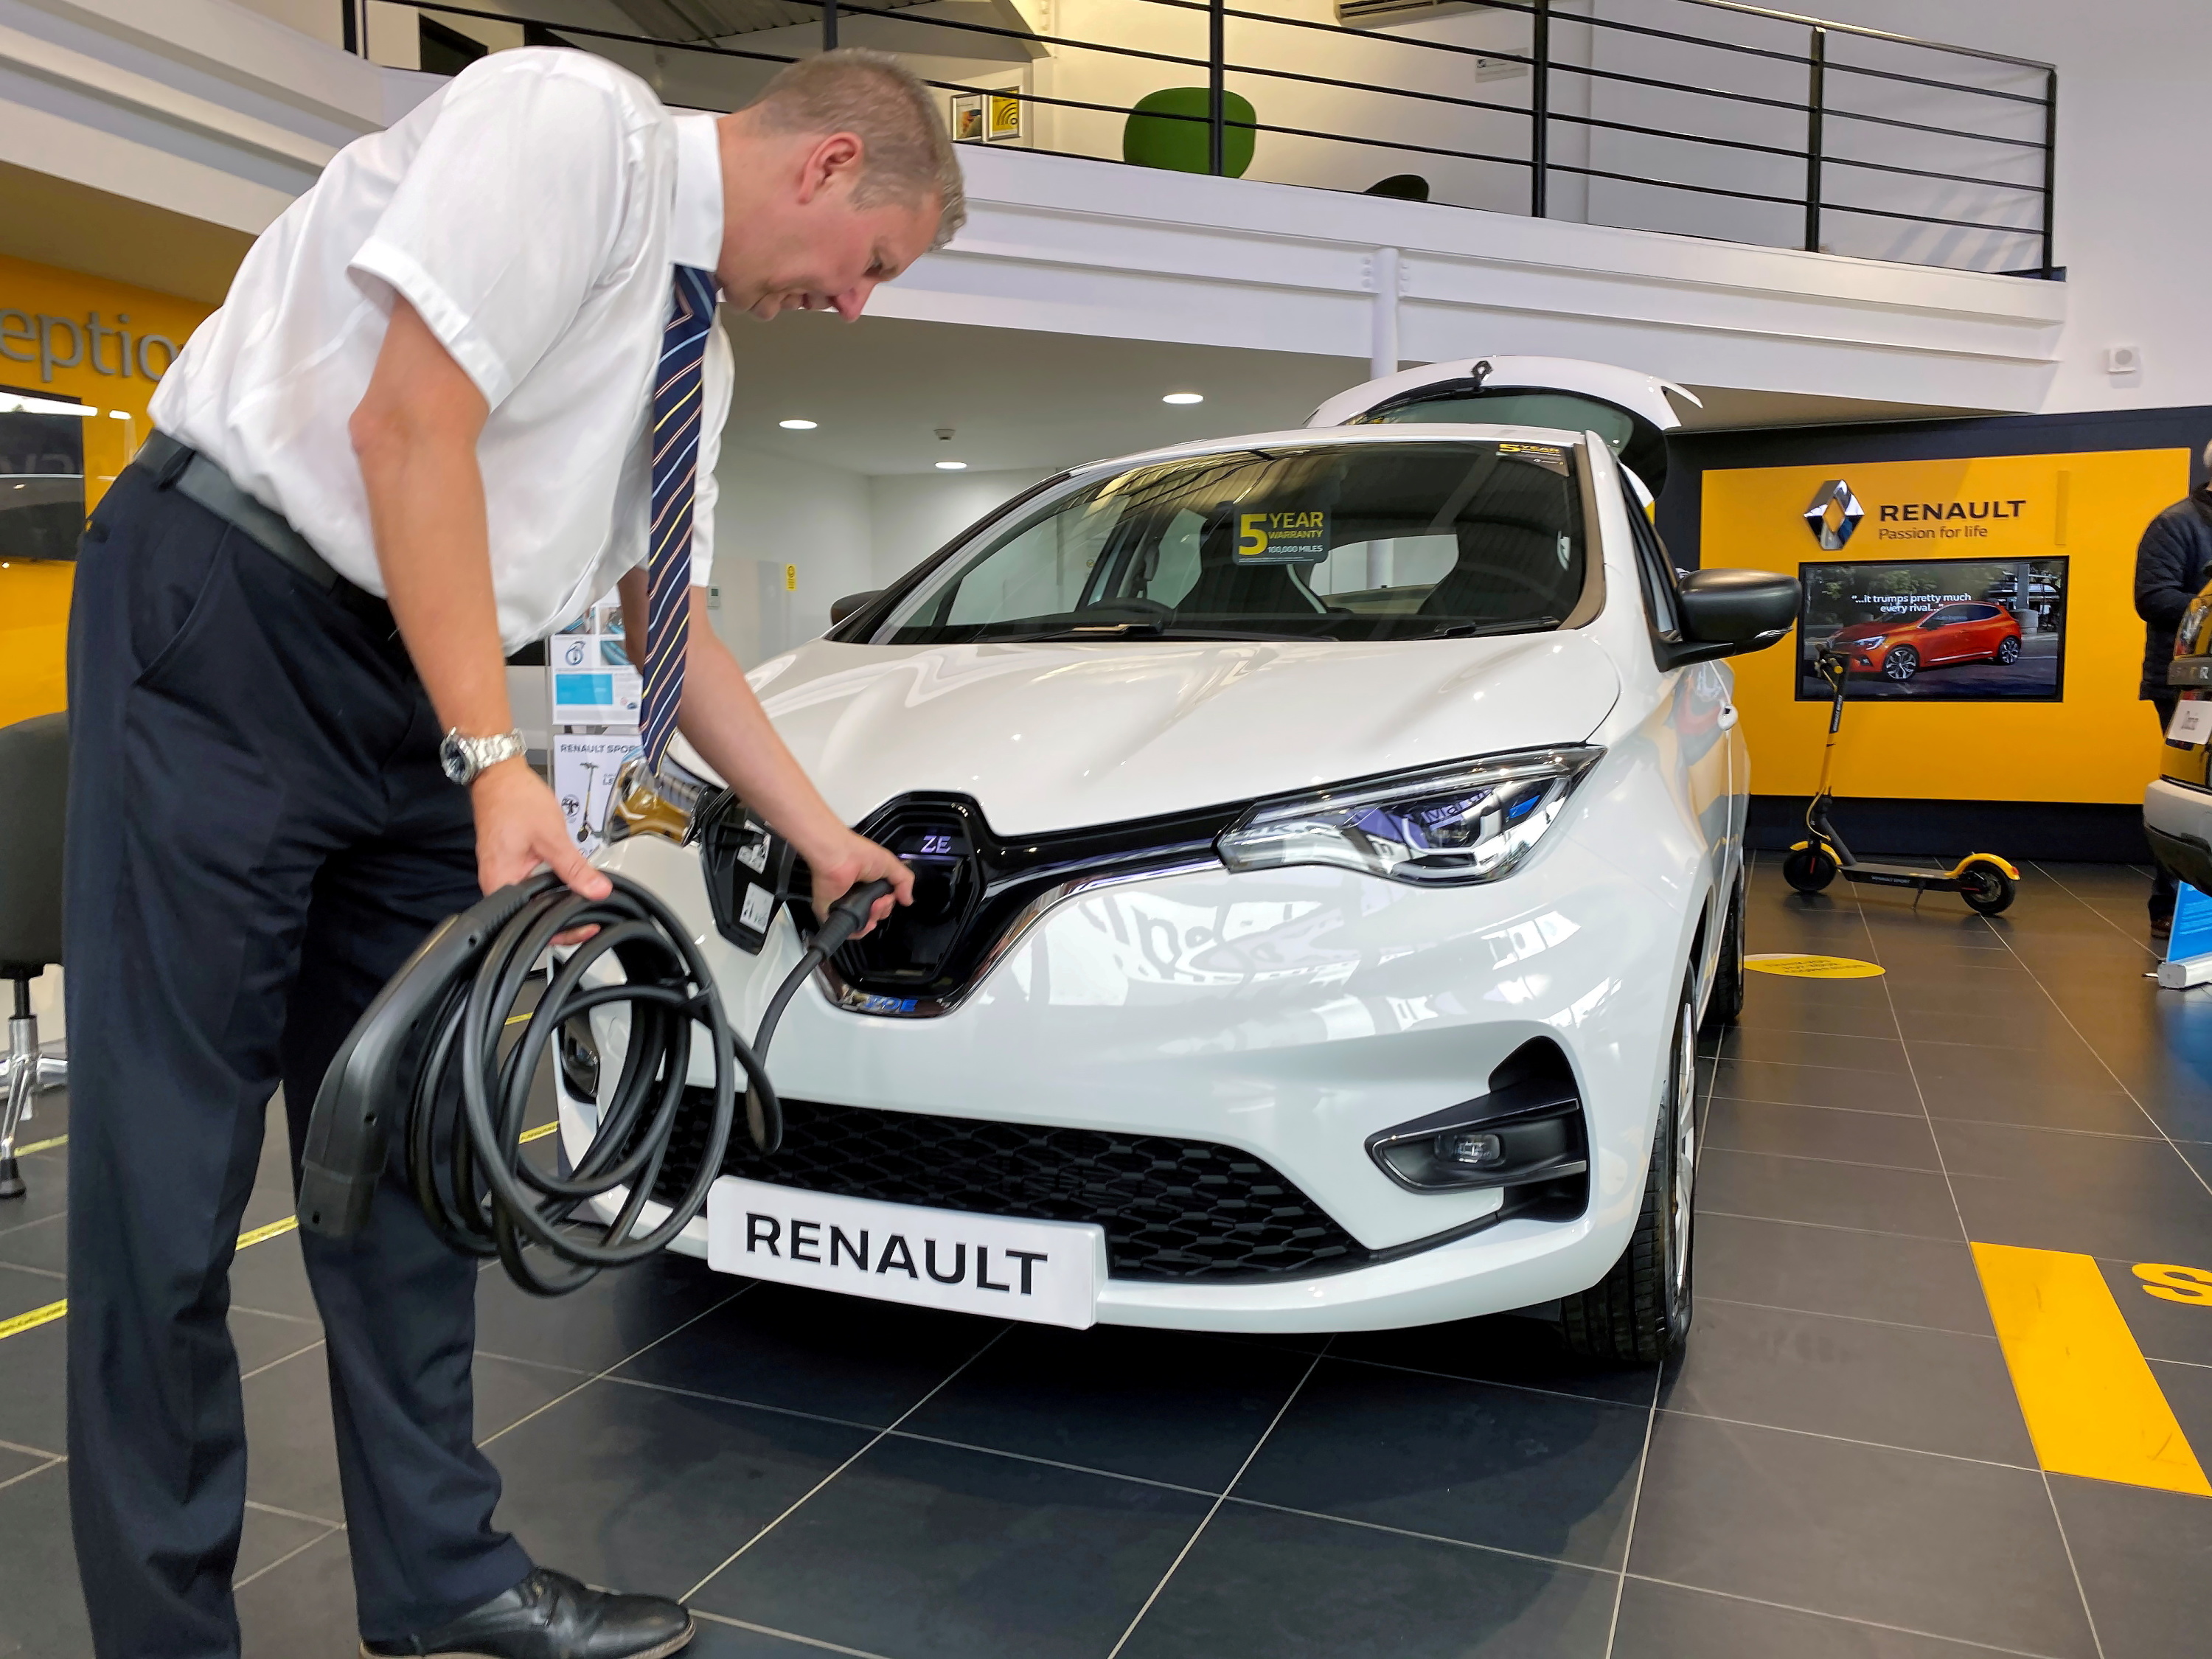 Recyclage des batteries chez Renault : Comment les recycler de manière  responsable ? -  777